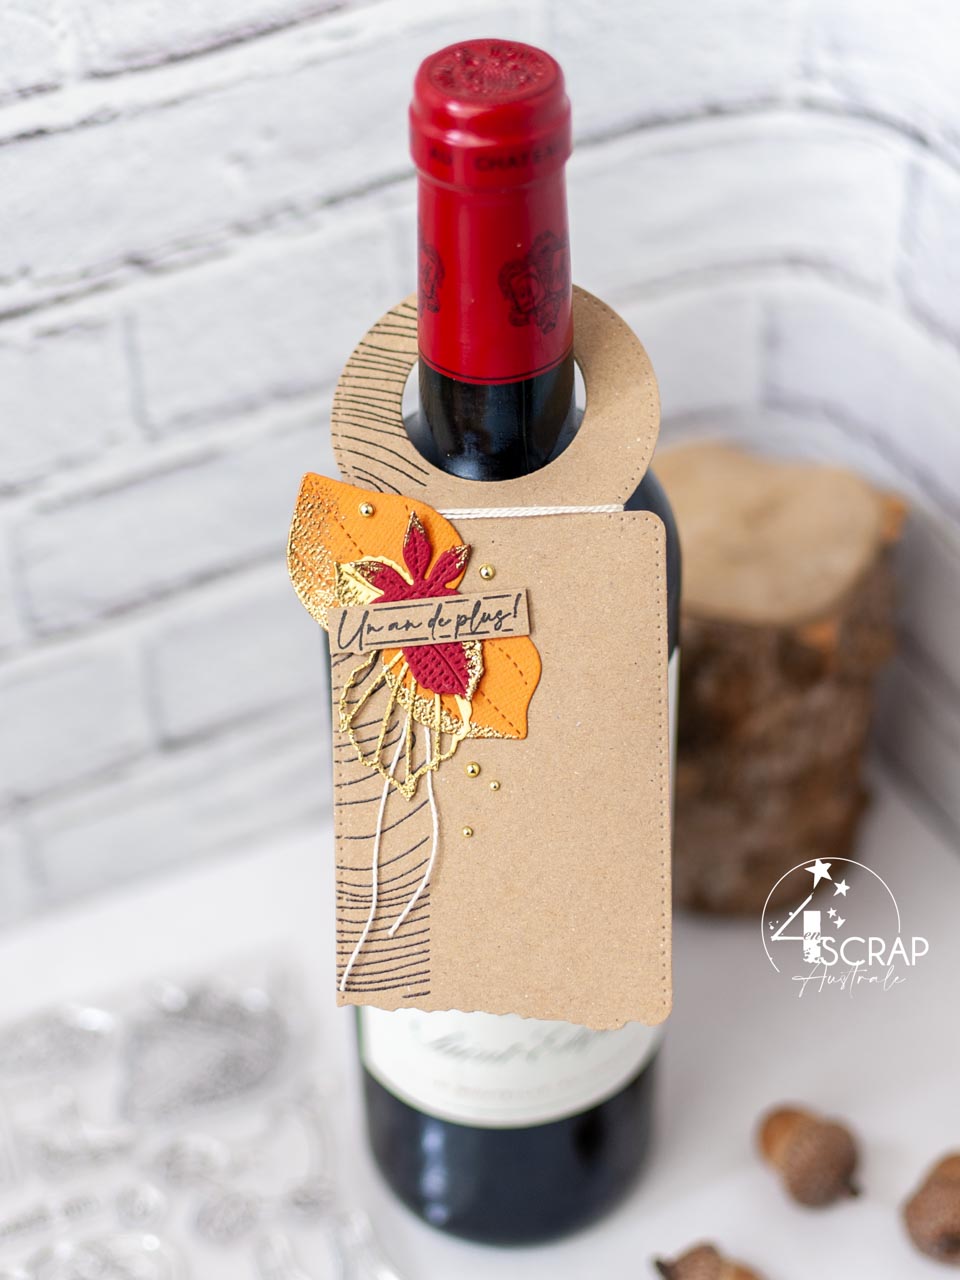 Création d'une étiquette pour offrir une bonne bouteille de vin. Sur le thème de l'automne avec fond bois embossé, feuillages et étiquette.